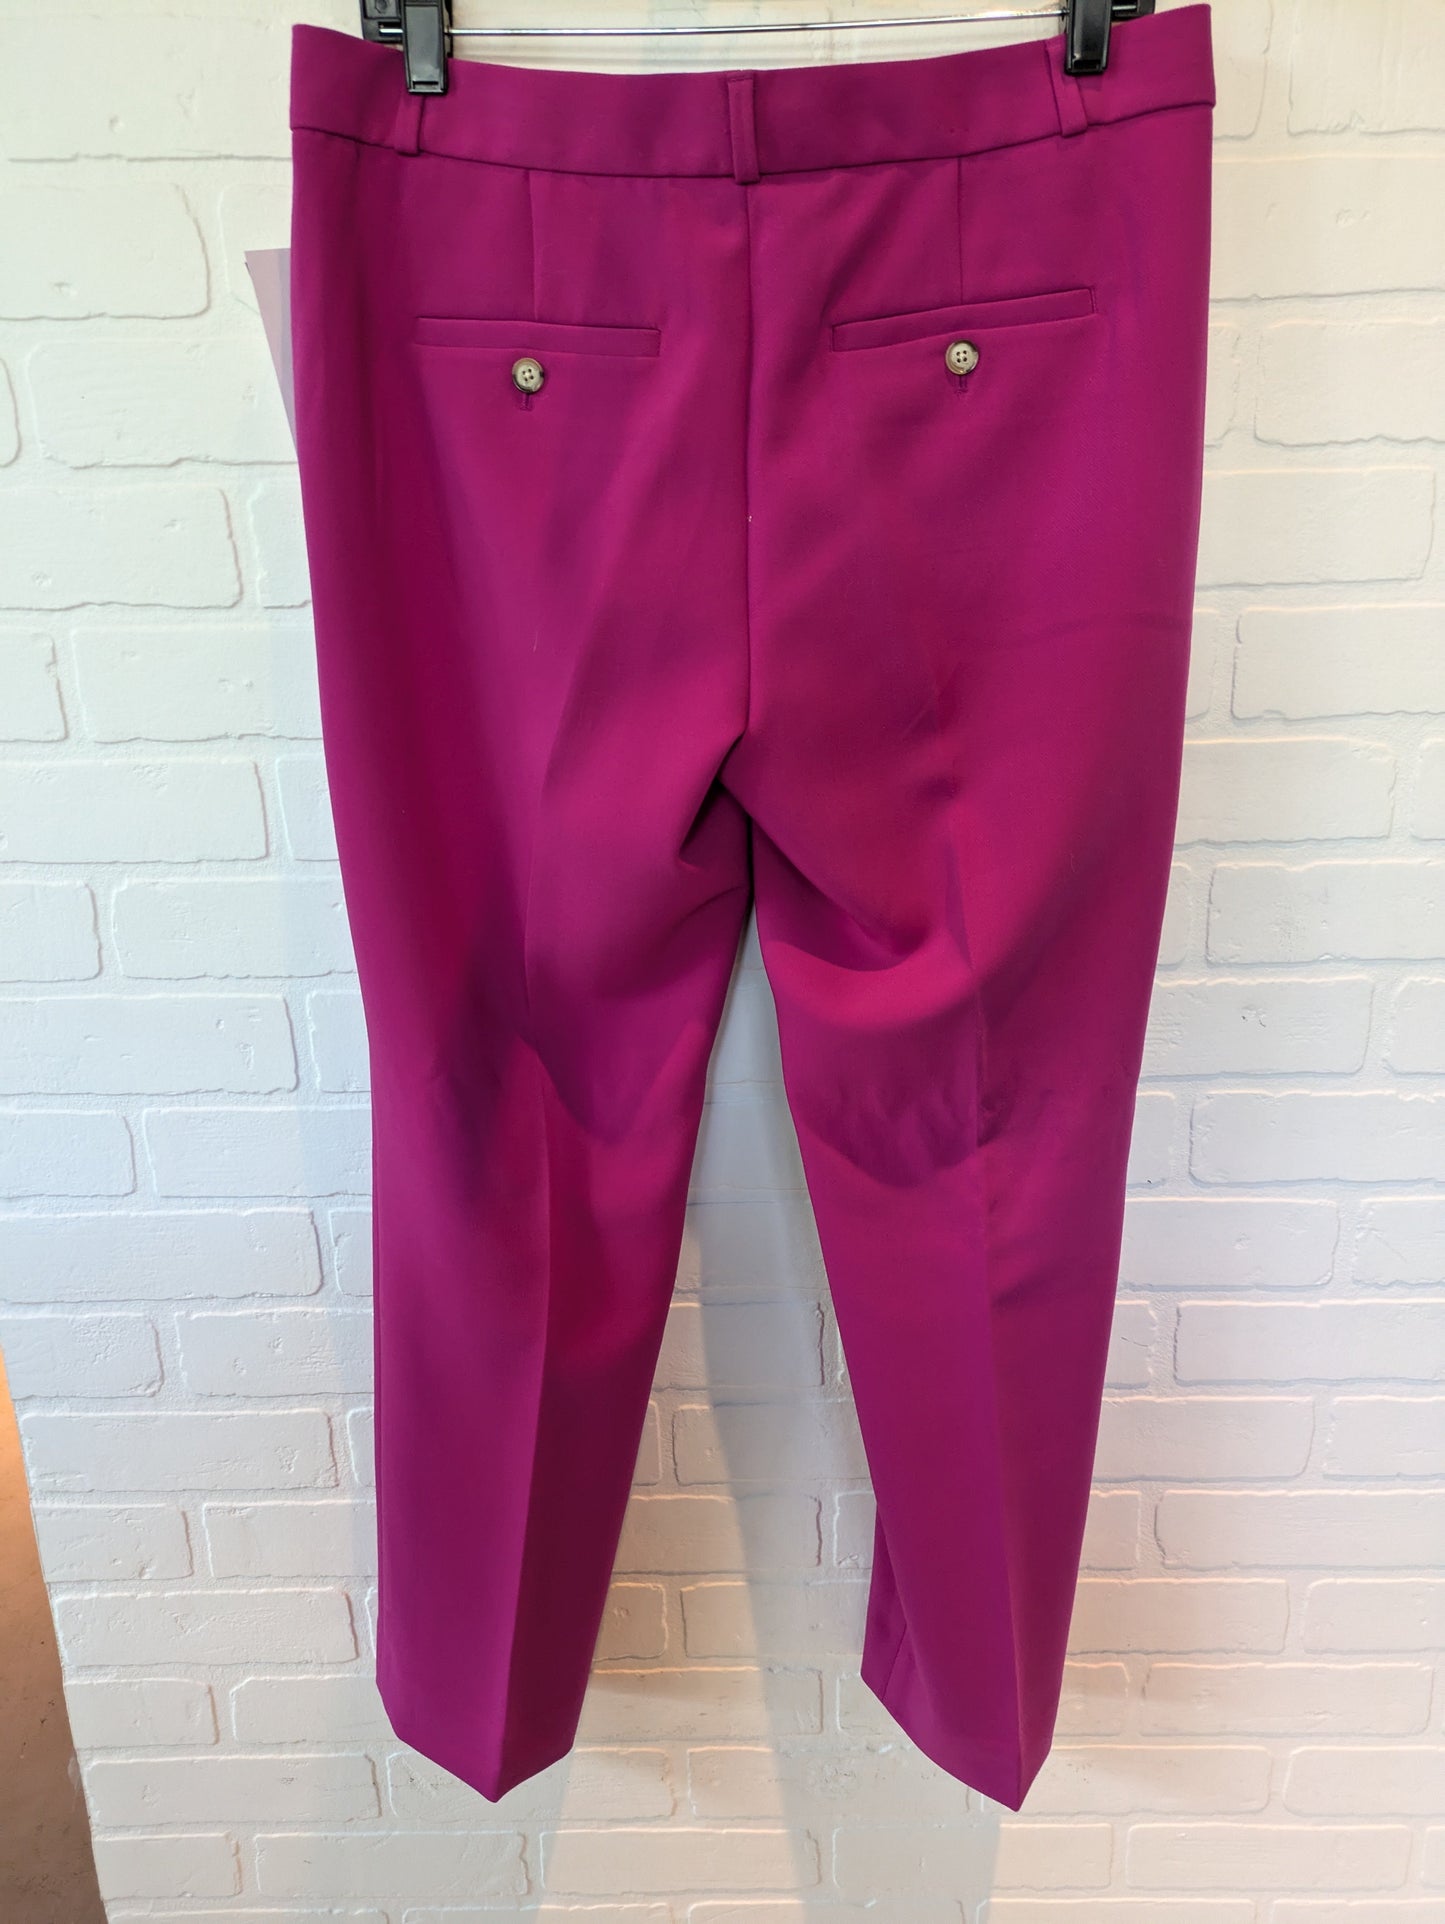 Pink Pants Dress Banana Republic, Size 6